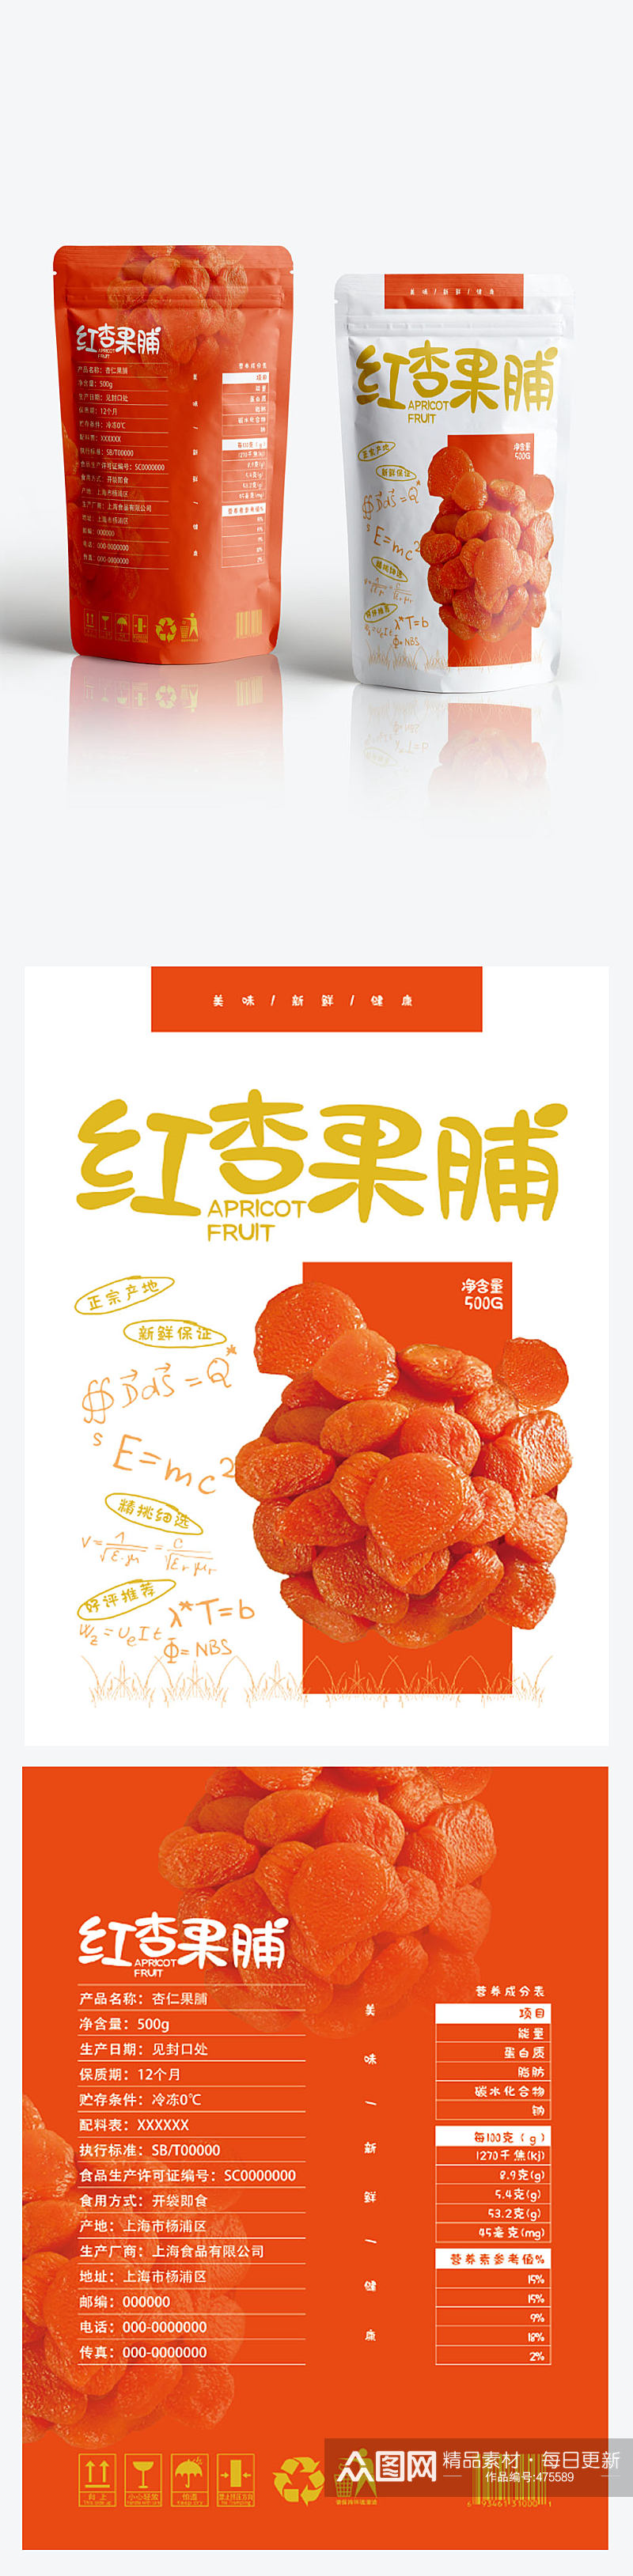 红杏果脯零食包装设计素材